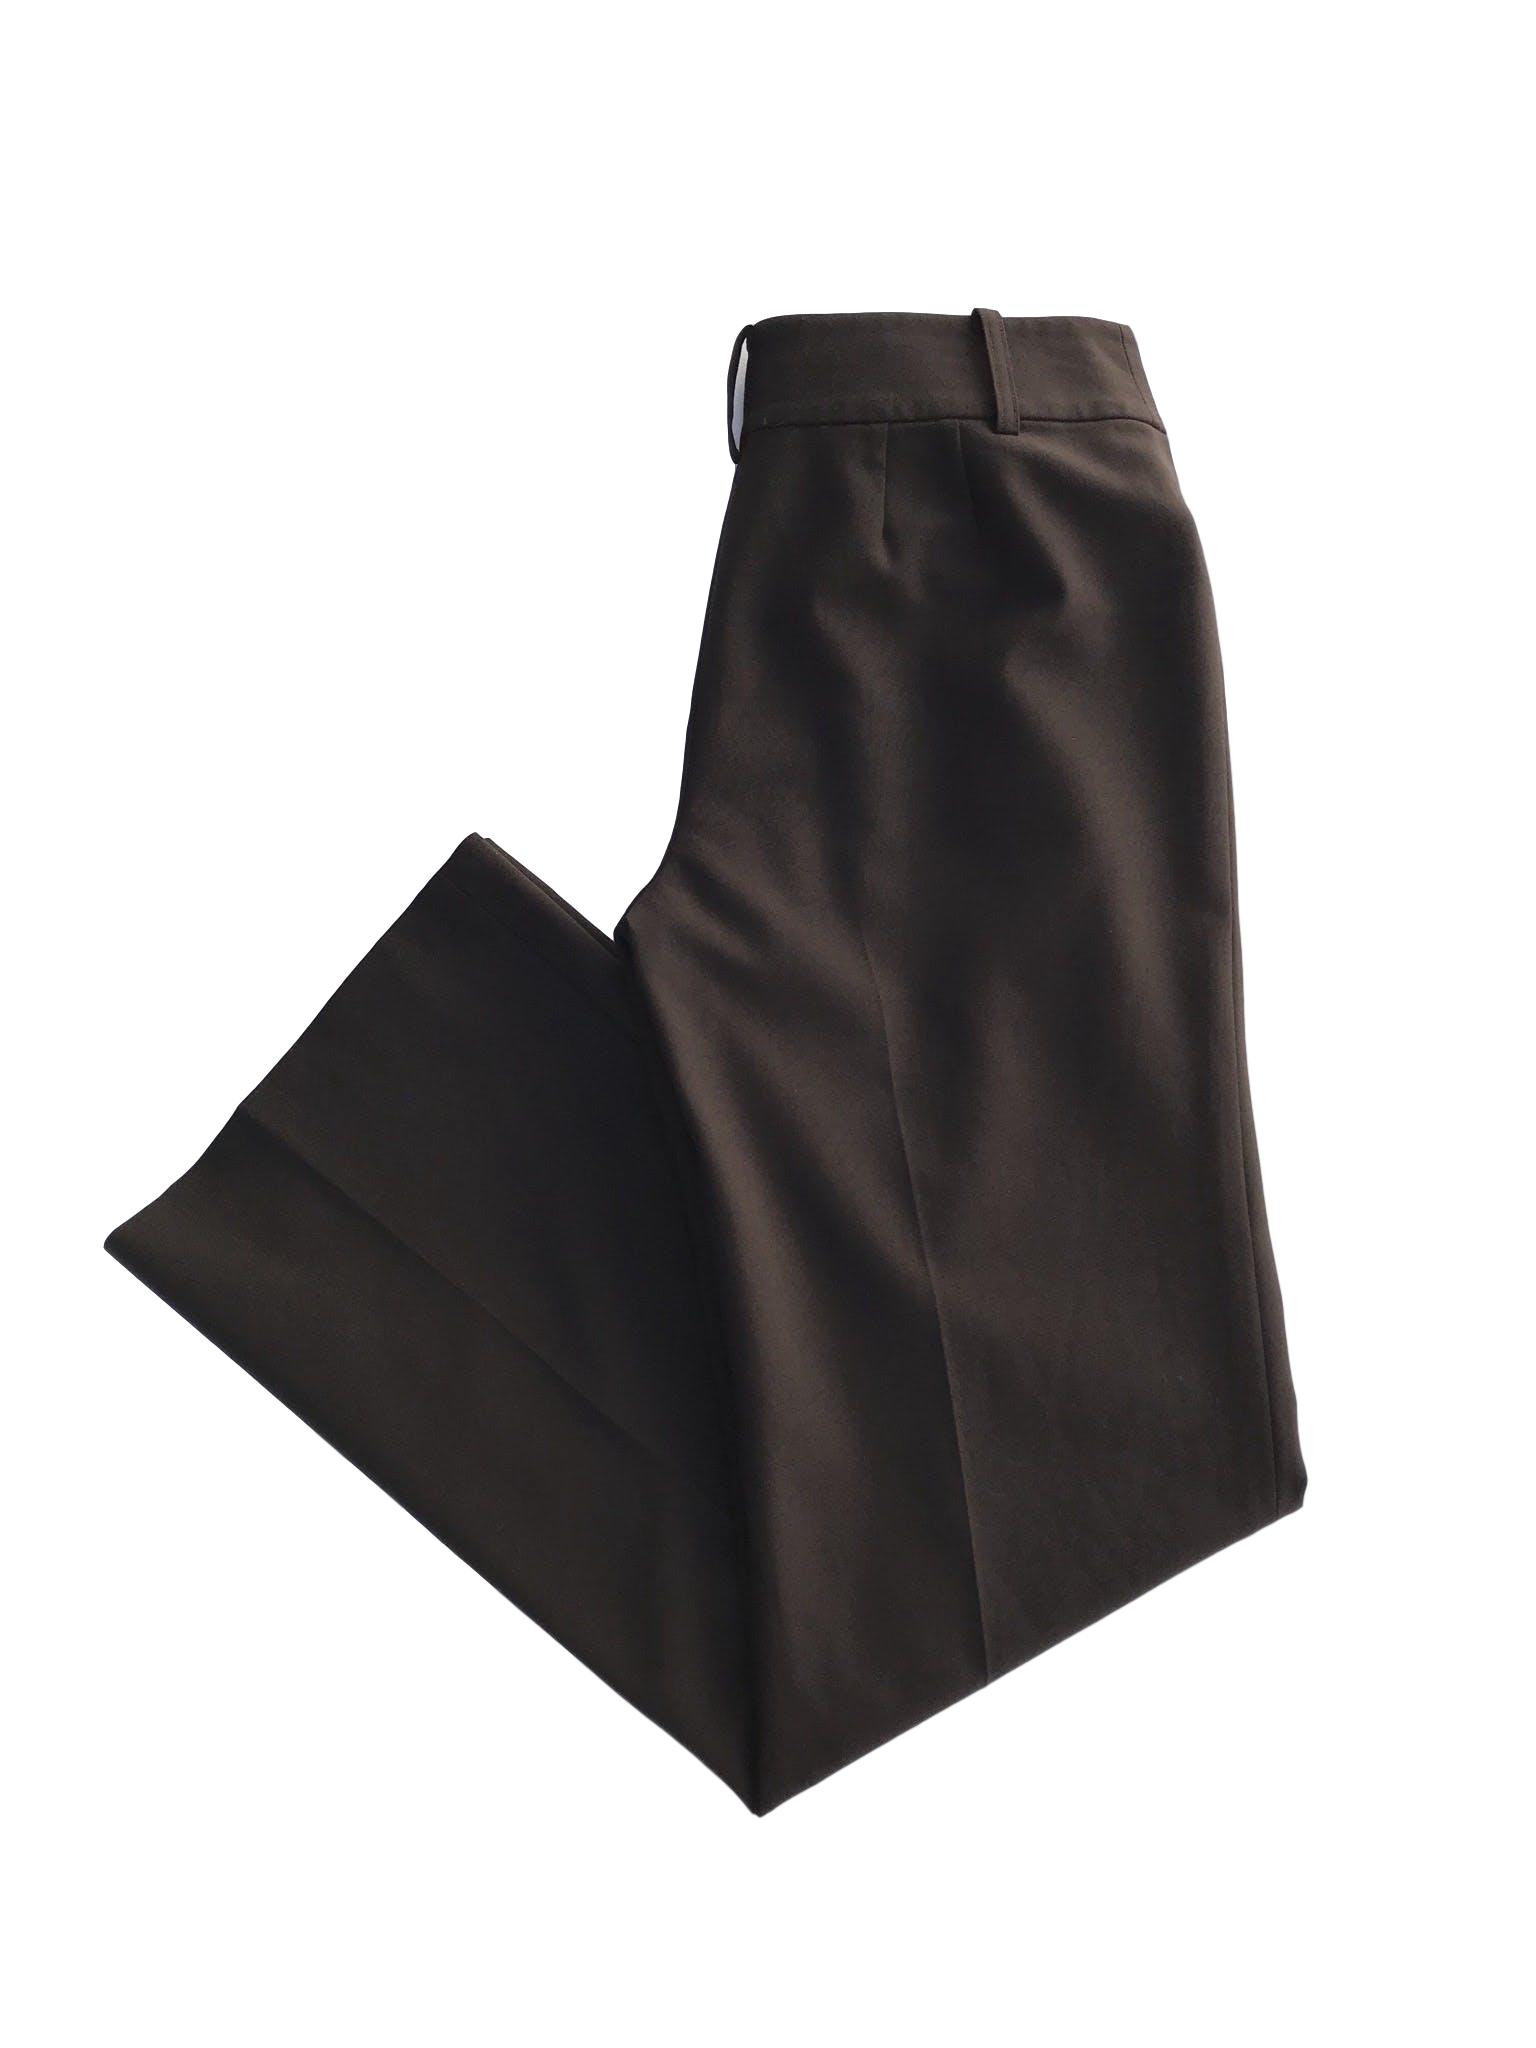 Pantalón Ann Taylor marrón, tela tipo sastre 45% lana 45% polyester, forrado, con broches y cierre, pinzas posteriores, corte recto. Modelo atemporal y versátil. Precio original S/ 300
Talla 27